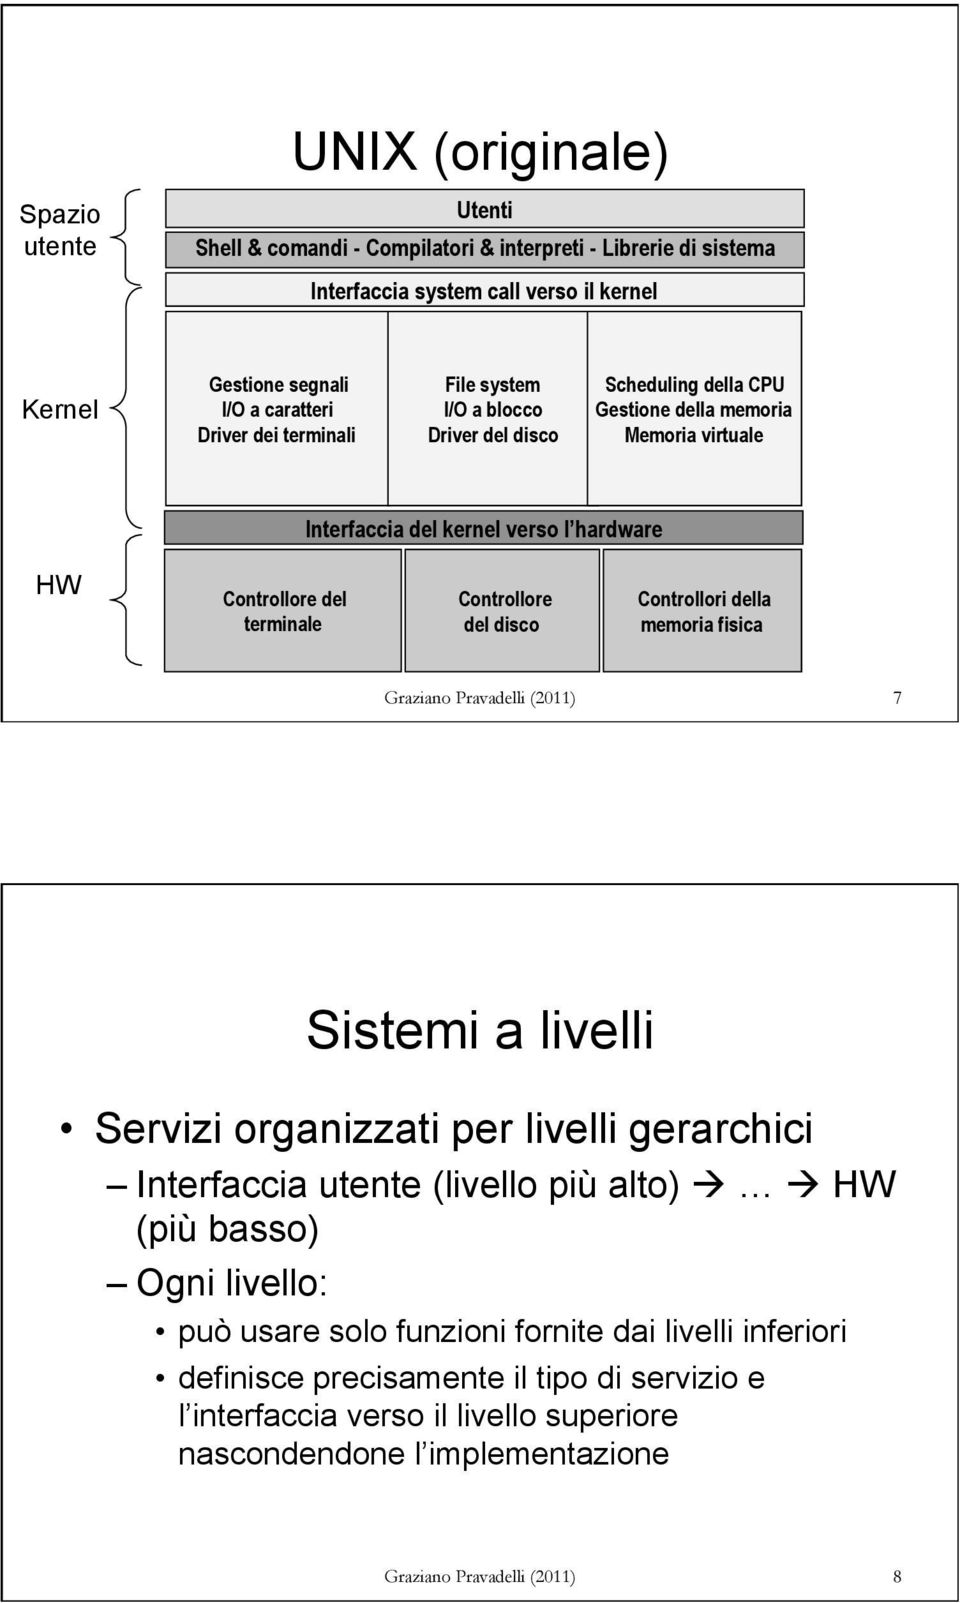 disco Controllori della memoria fisica Graziano Pravadelli (2011) 7 Sistemi a livelli Servizi organizzati per livelli gerarchici Interfaccia utente (livello più alto) à à HW (più basso) Ogni